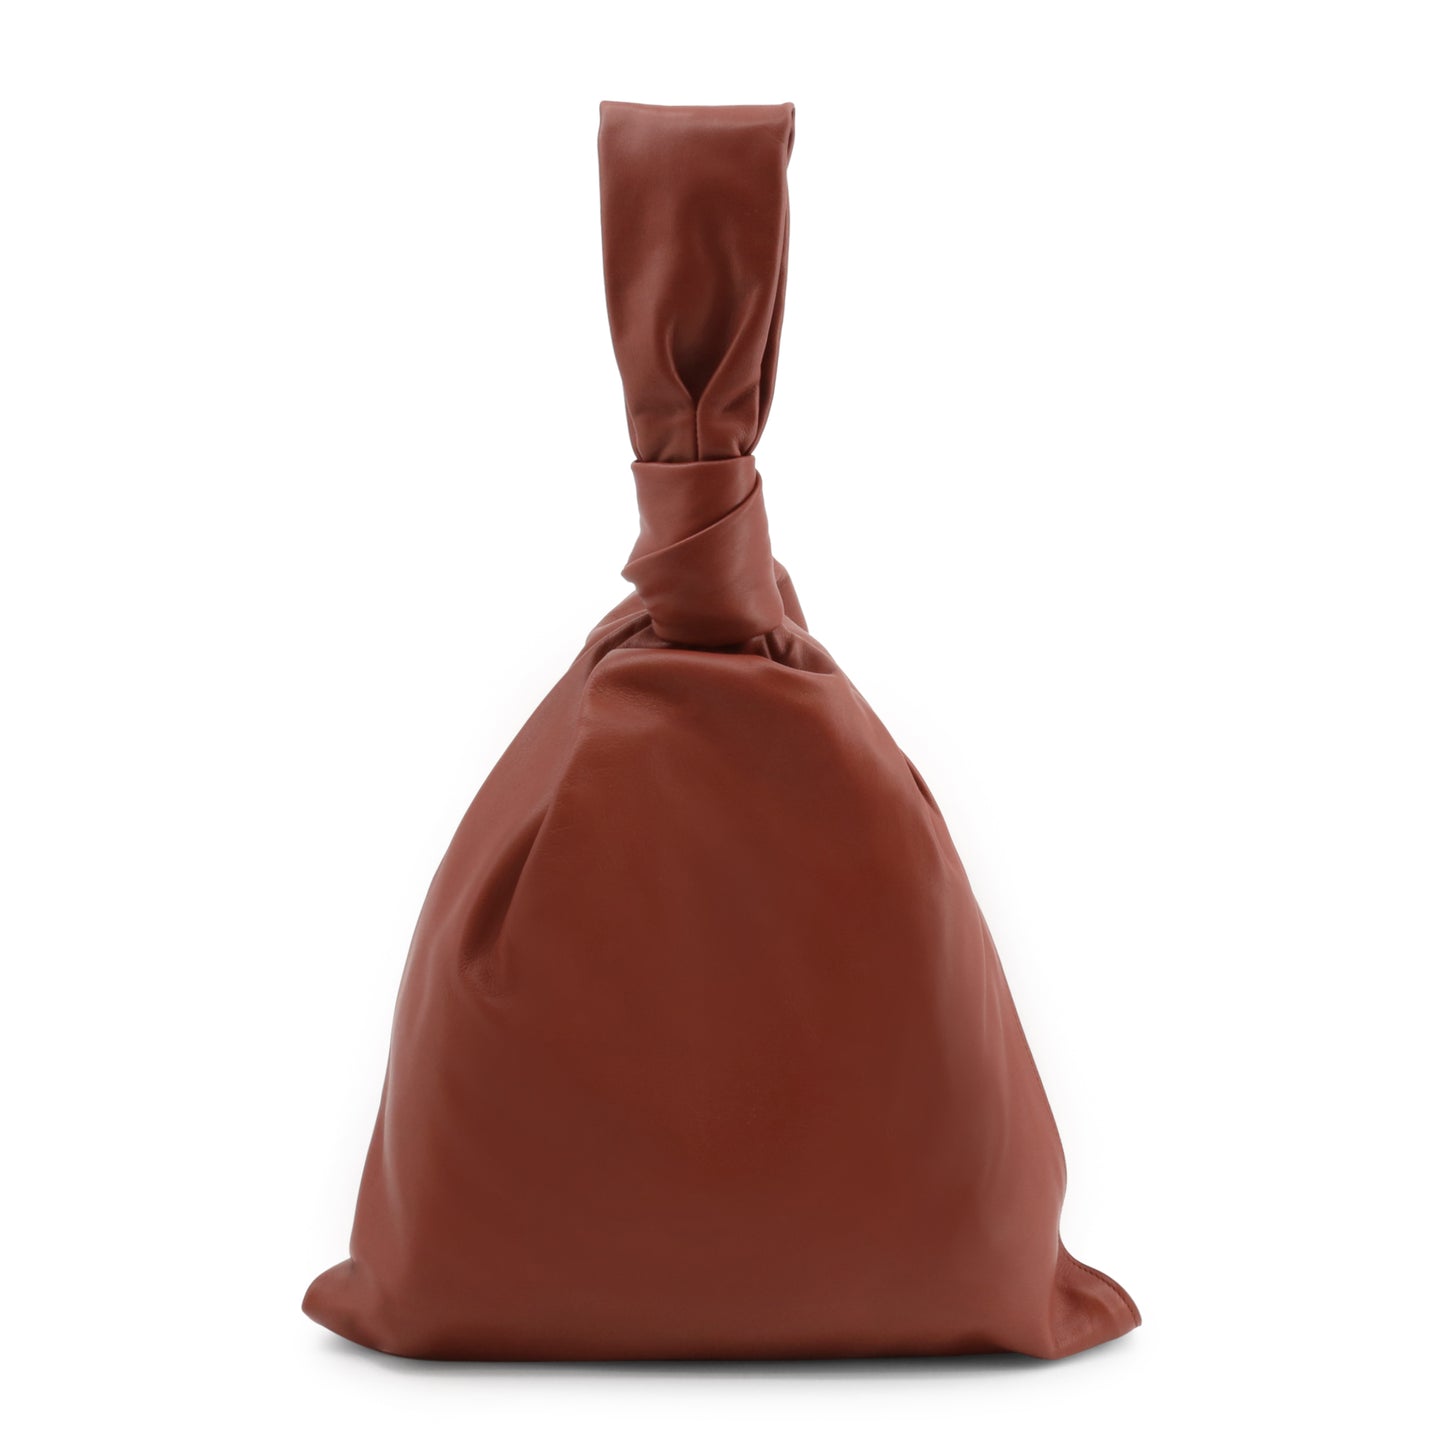 Bottega Veneta Women's Leather Handbag with Zip Closure and Pack Handle in Brown